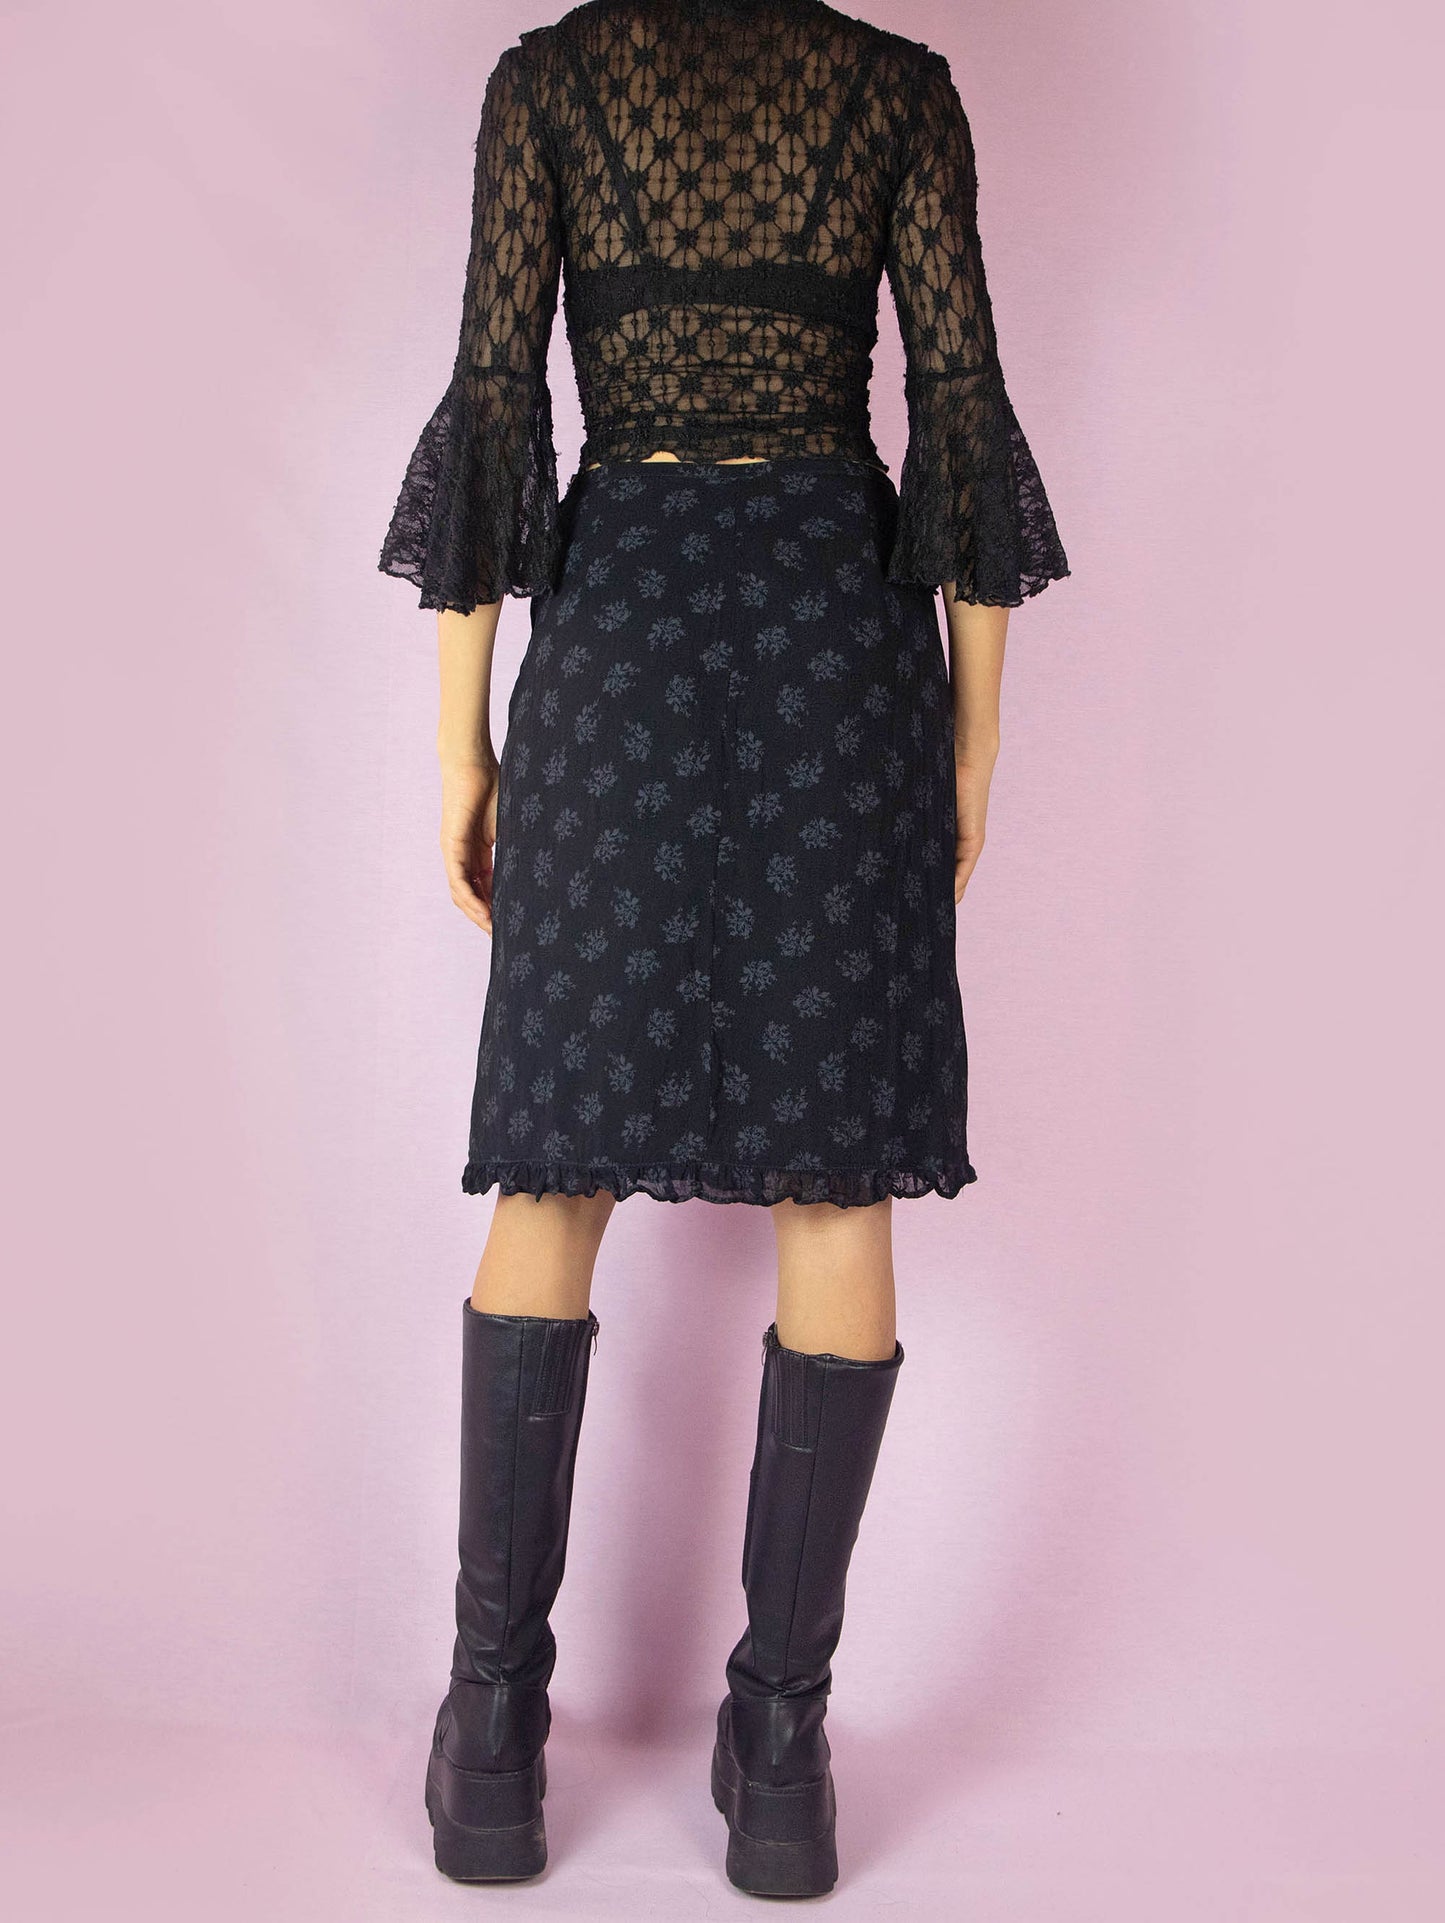 Vintage 90s Black Floral Print Skirt - S